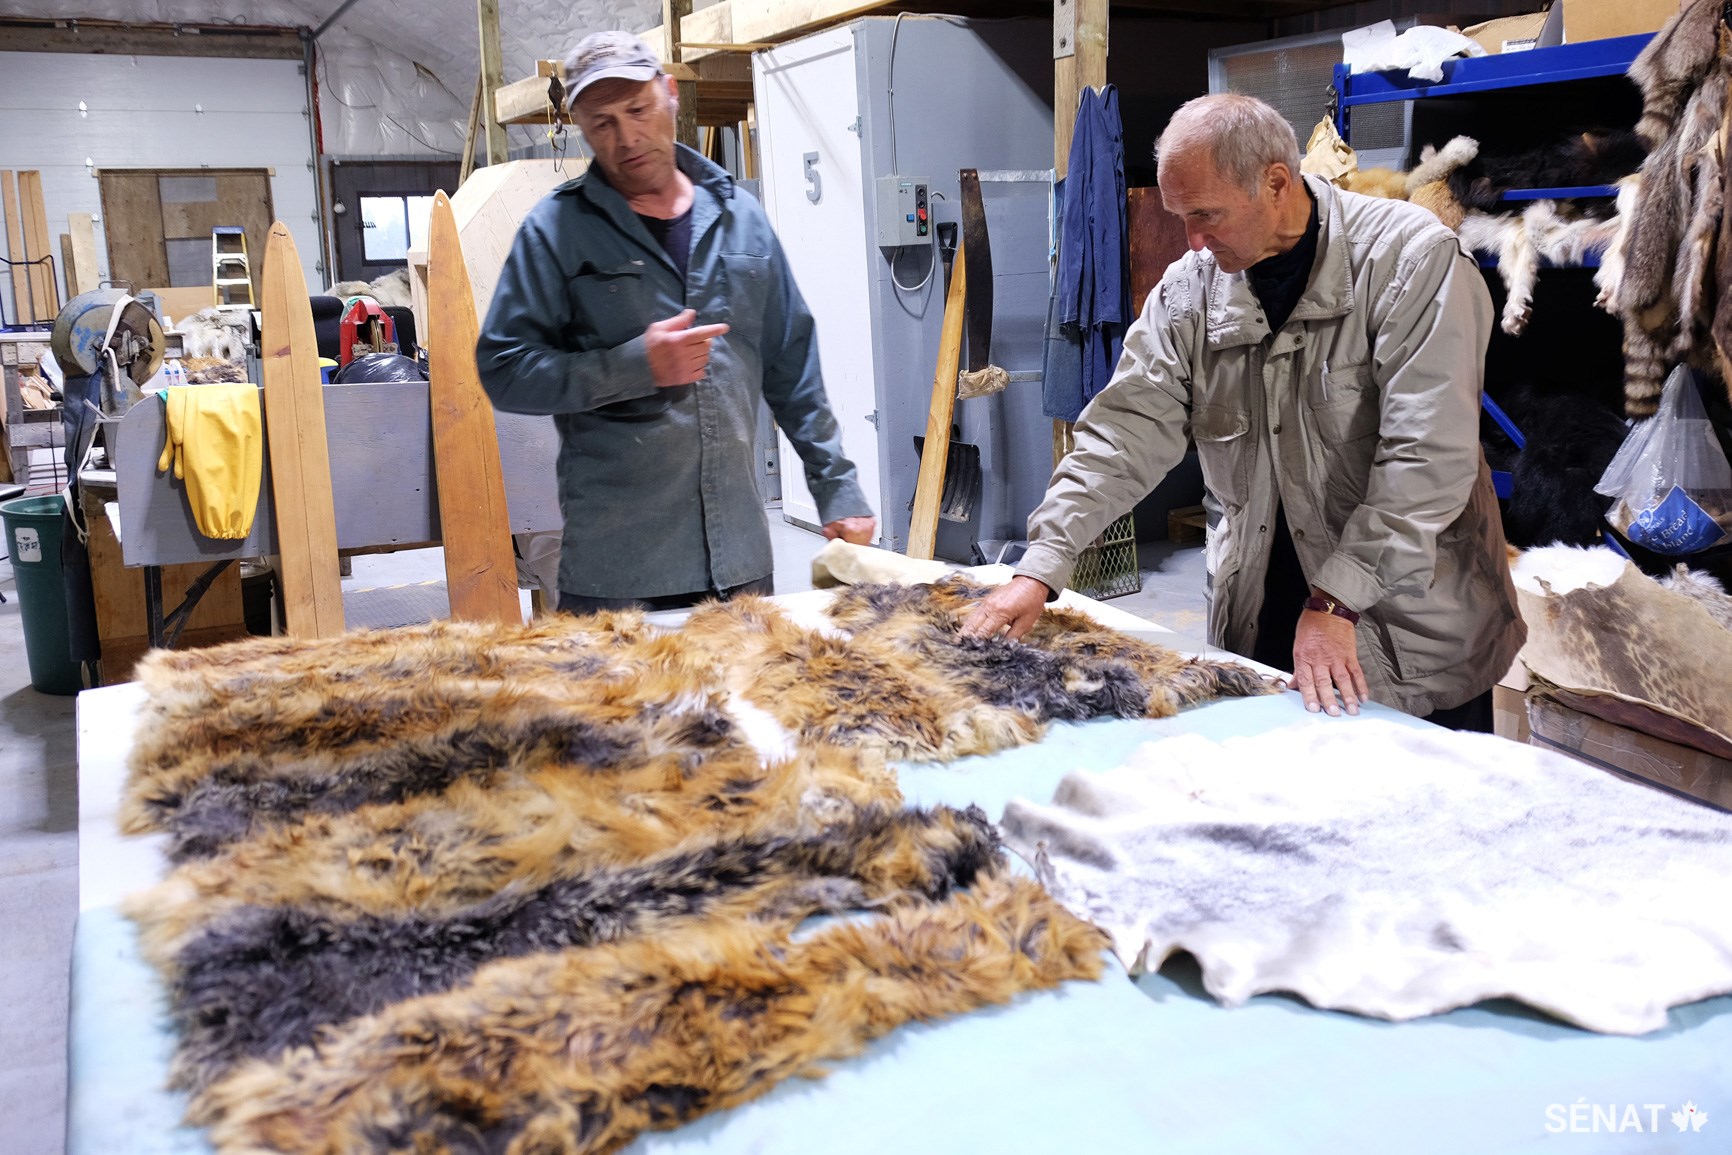 Le sénateur Joseph Day, à droite, admire des peaux de renard à Nunavik Furs, à Kuujjuaq. Cet établissement tanne environ 500 peaux par année, qu’il achète habituellement à 50 $ chacune auprès de chasseurs locaux et les revend à 150 $ ou plus. Nunavik Tannery vend des peaux de renards, de loups, de rongeurs et, plus rarement, d'ours polaires, tout en soutenant la récolte de fourrures localement durable à des prix équitables pour les chasseurs.